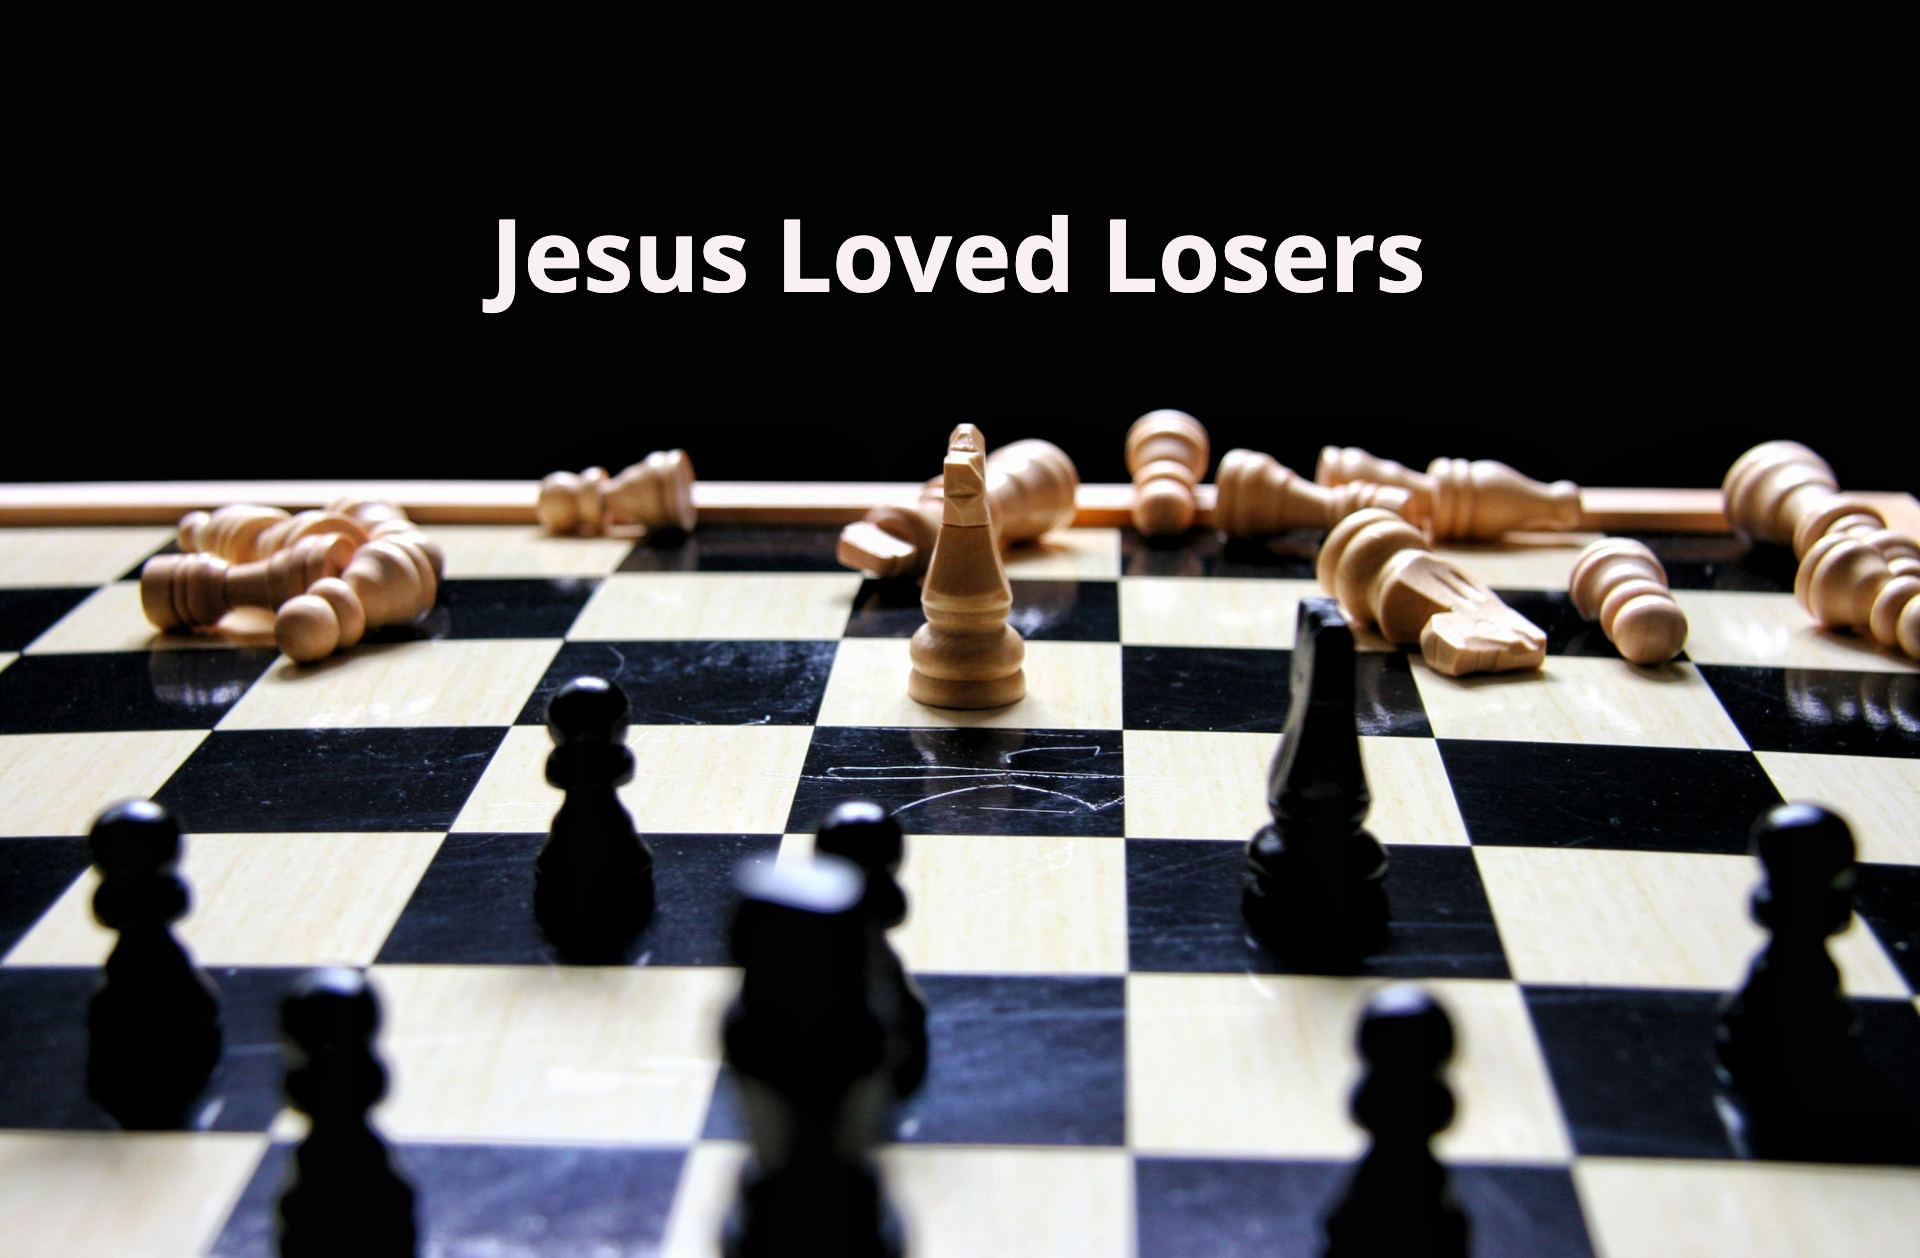 Jesus loved losers